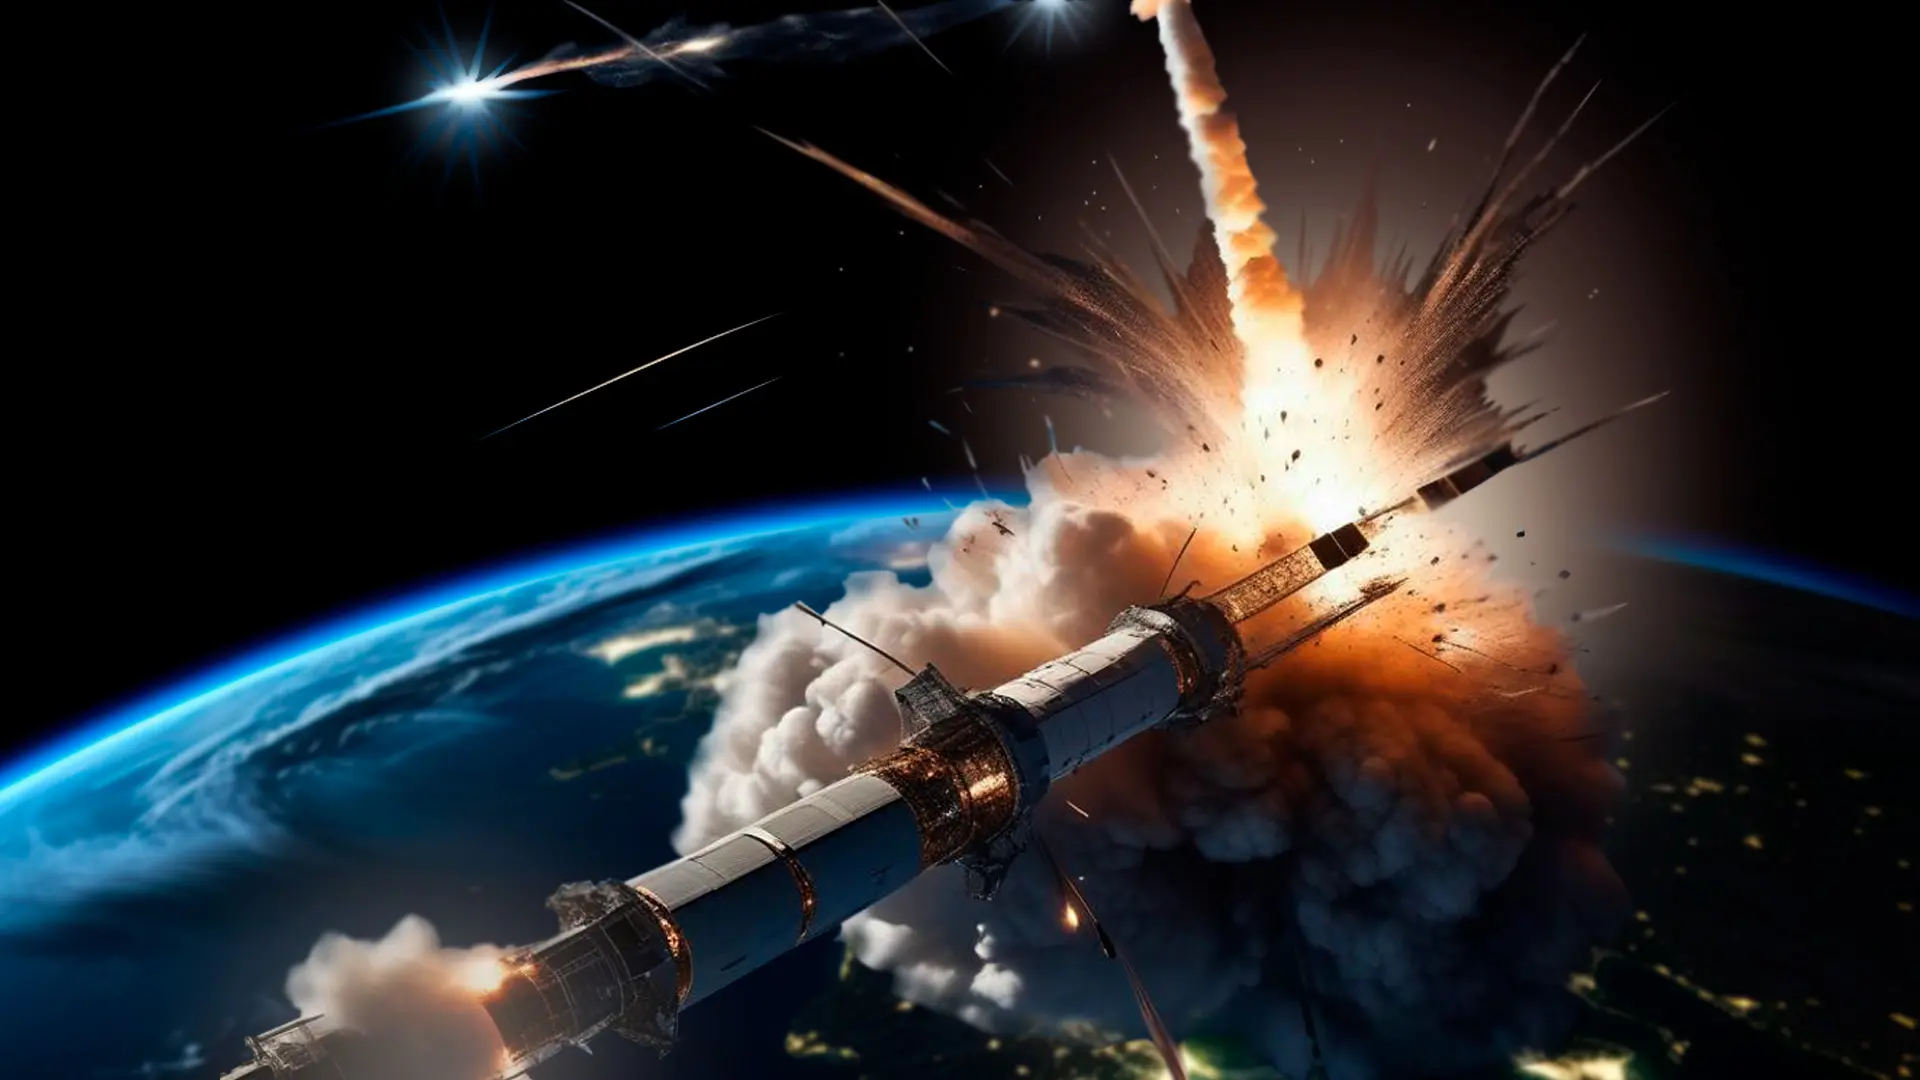 Satélite en la orbita de la tierra es alcanzado y destruido por un misil antisatélite